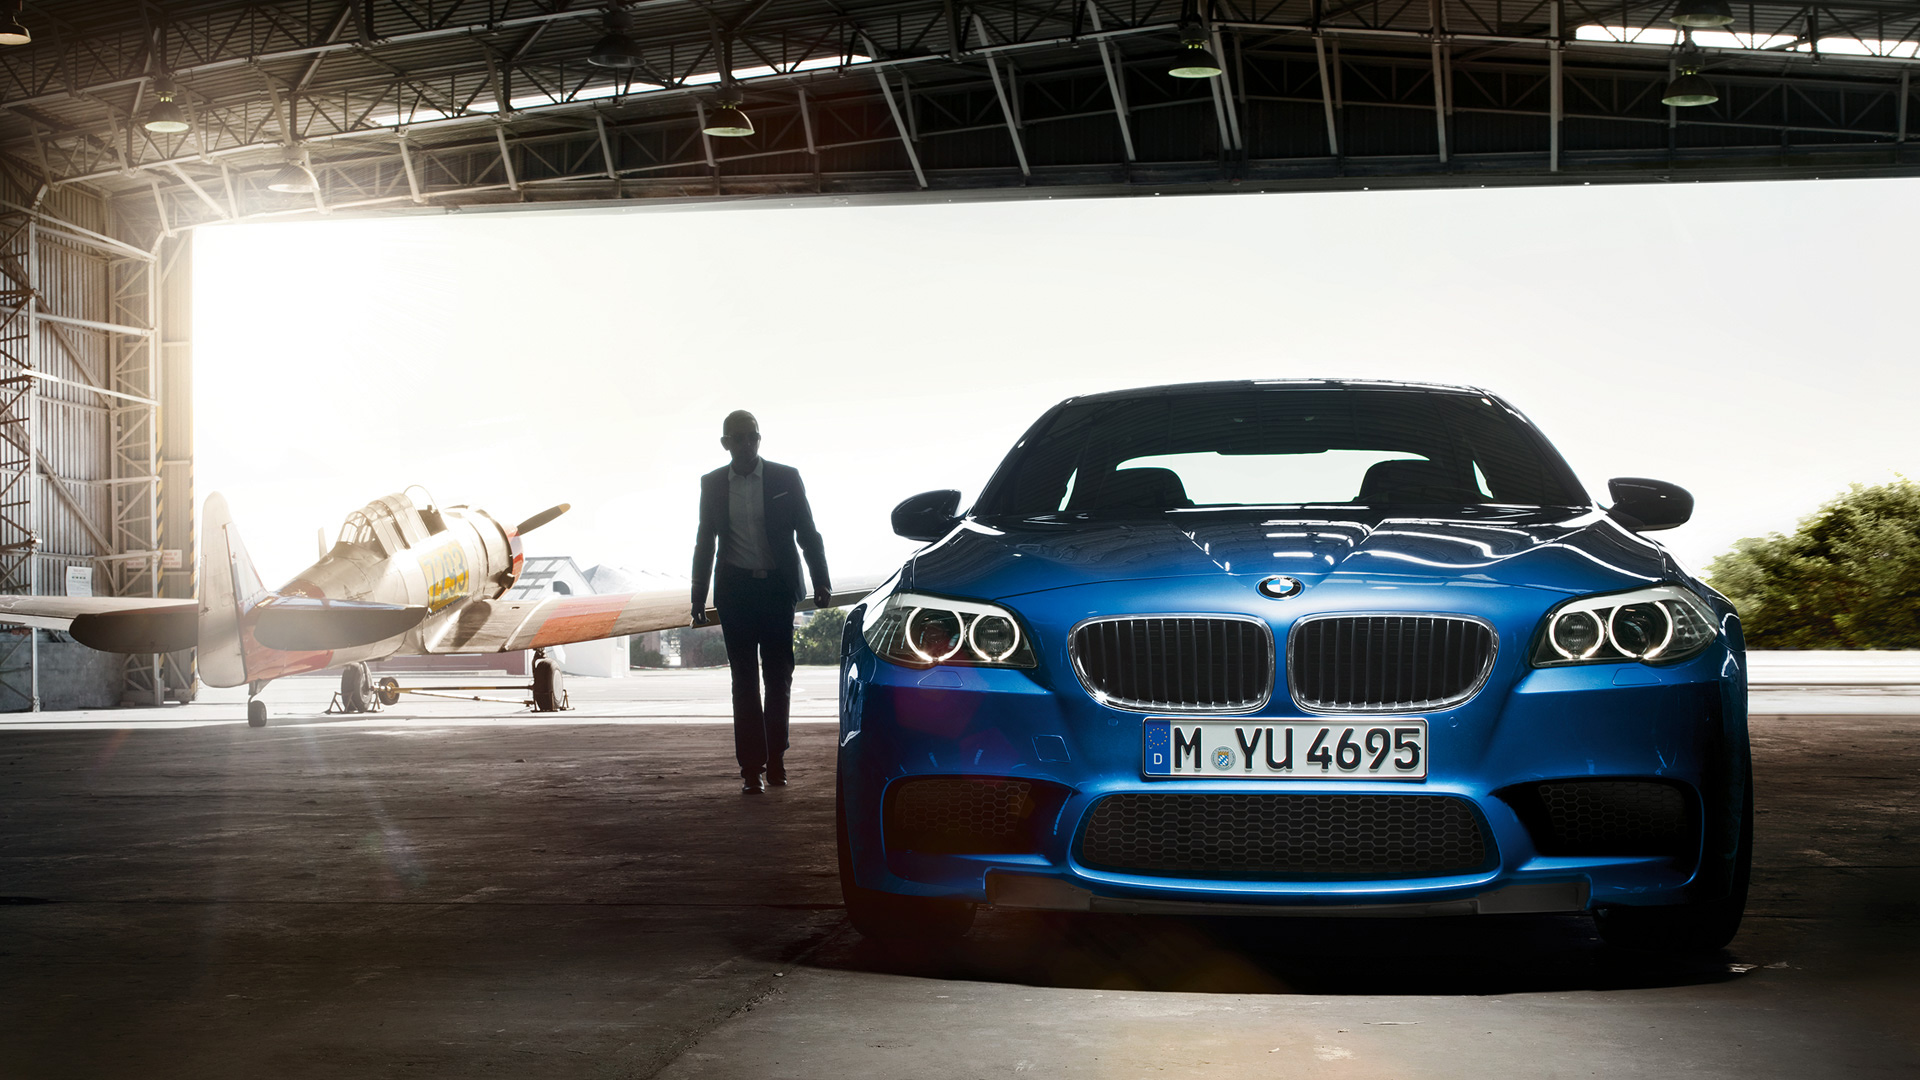  2012 BMW M5 Wallpaper.